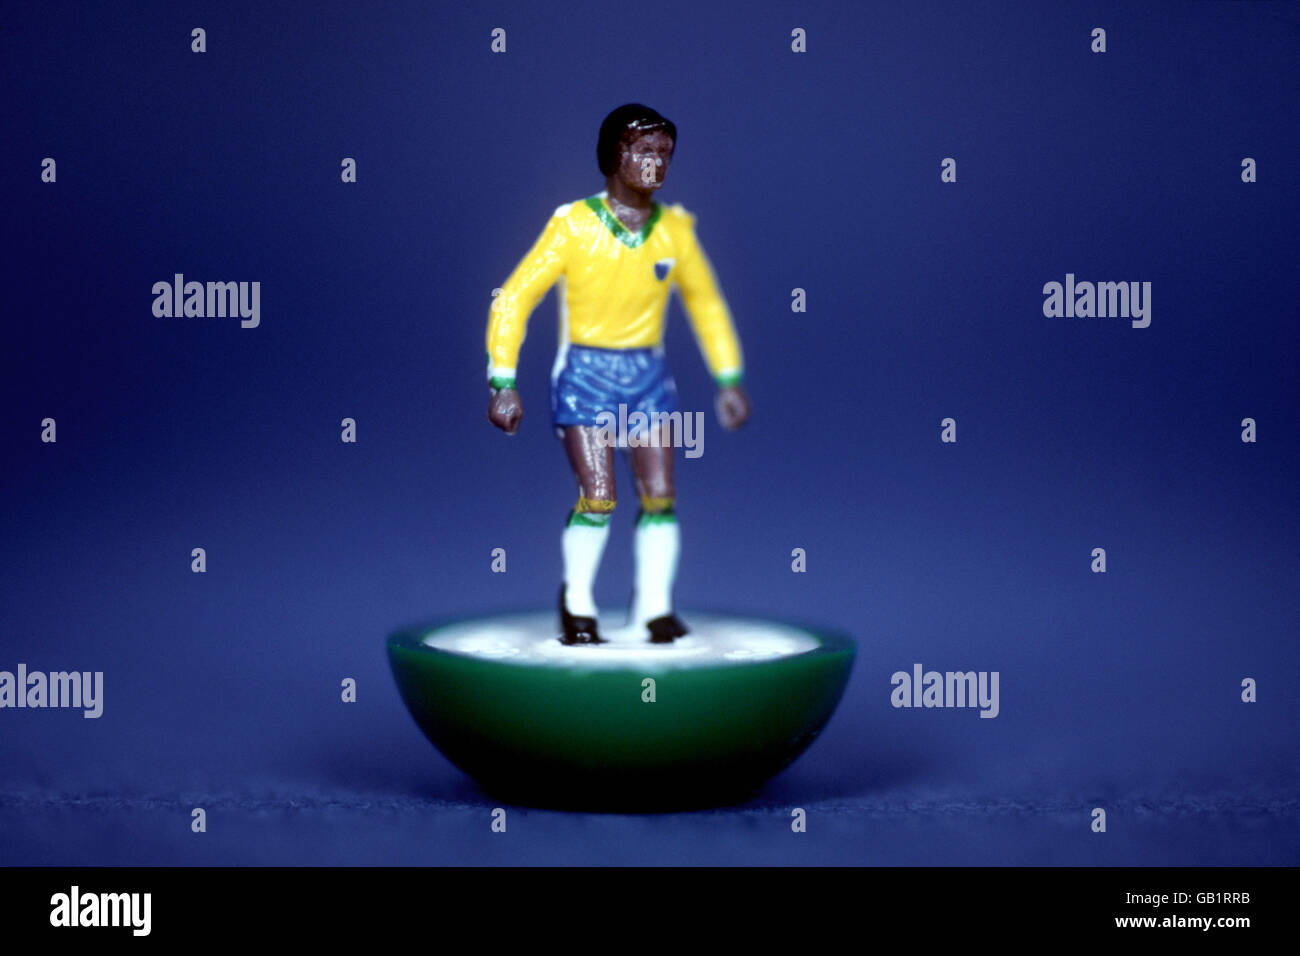 Fútbol - Subbuteo. Figura de subbuteo en kit de Brasil Foto de stock